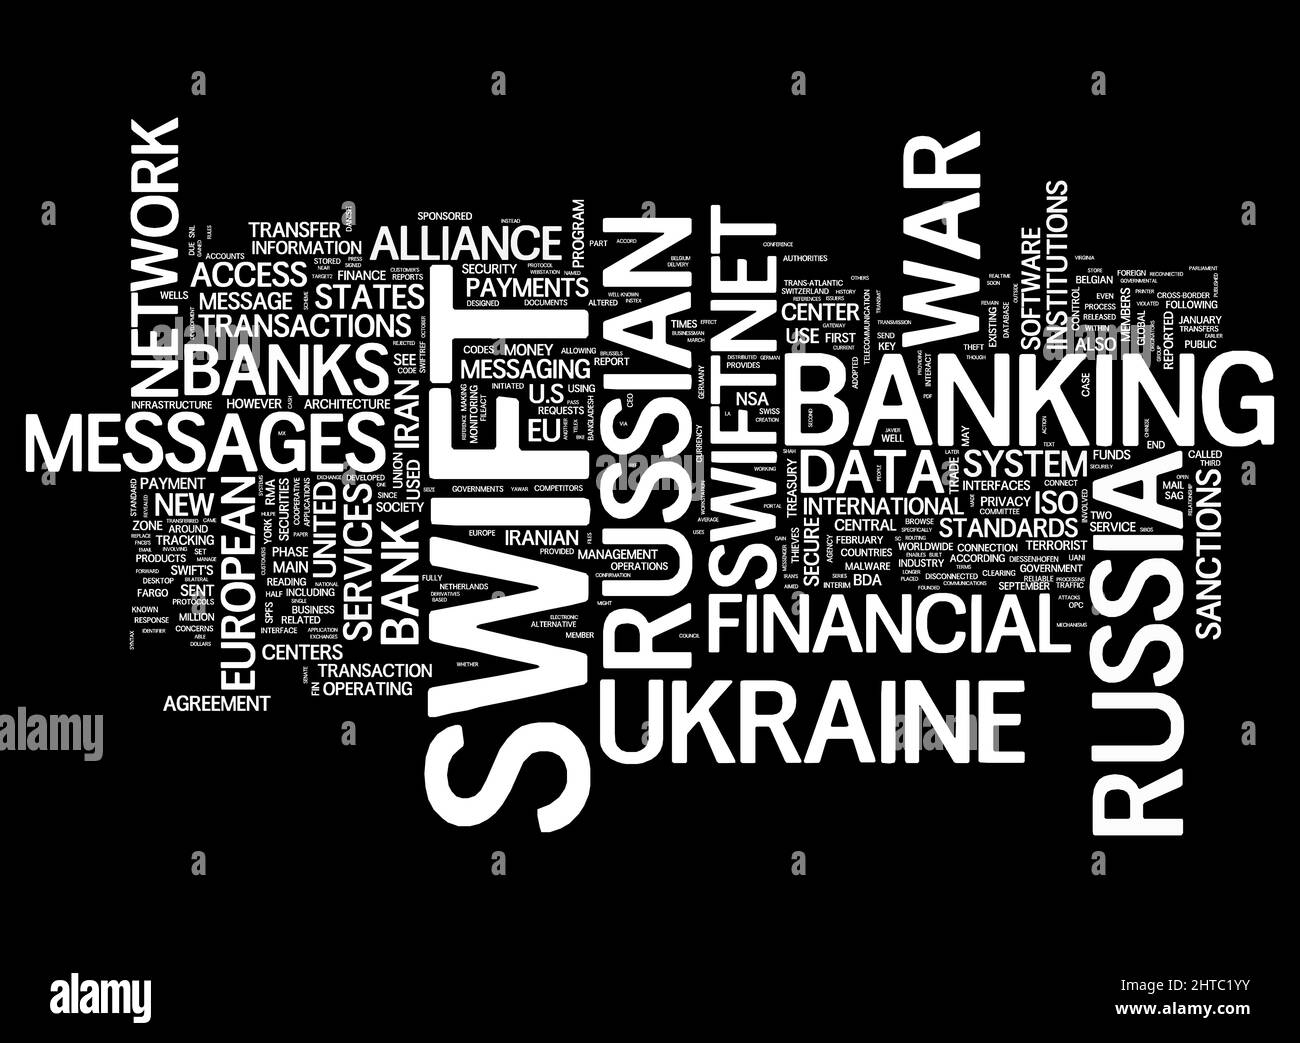 SWIFT - Società per le Telecomunicazioni finanziarie interbancarie nel mondo - collage di concetti di parola Foto Stock